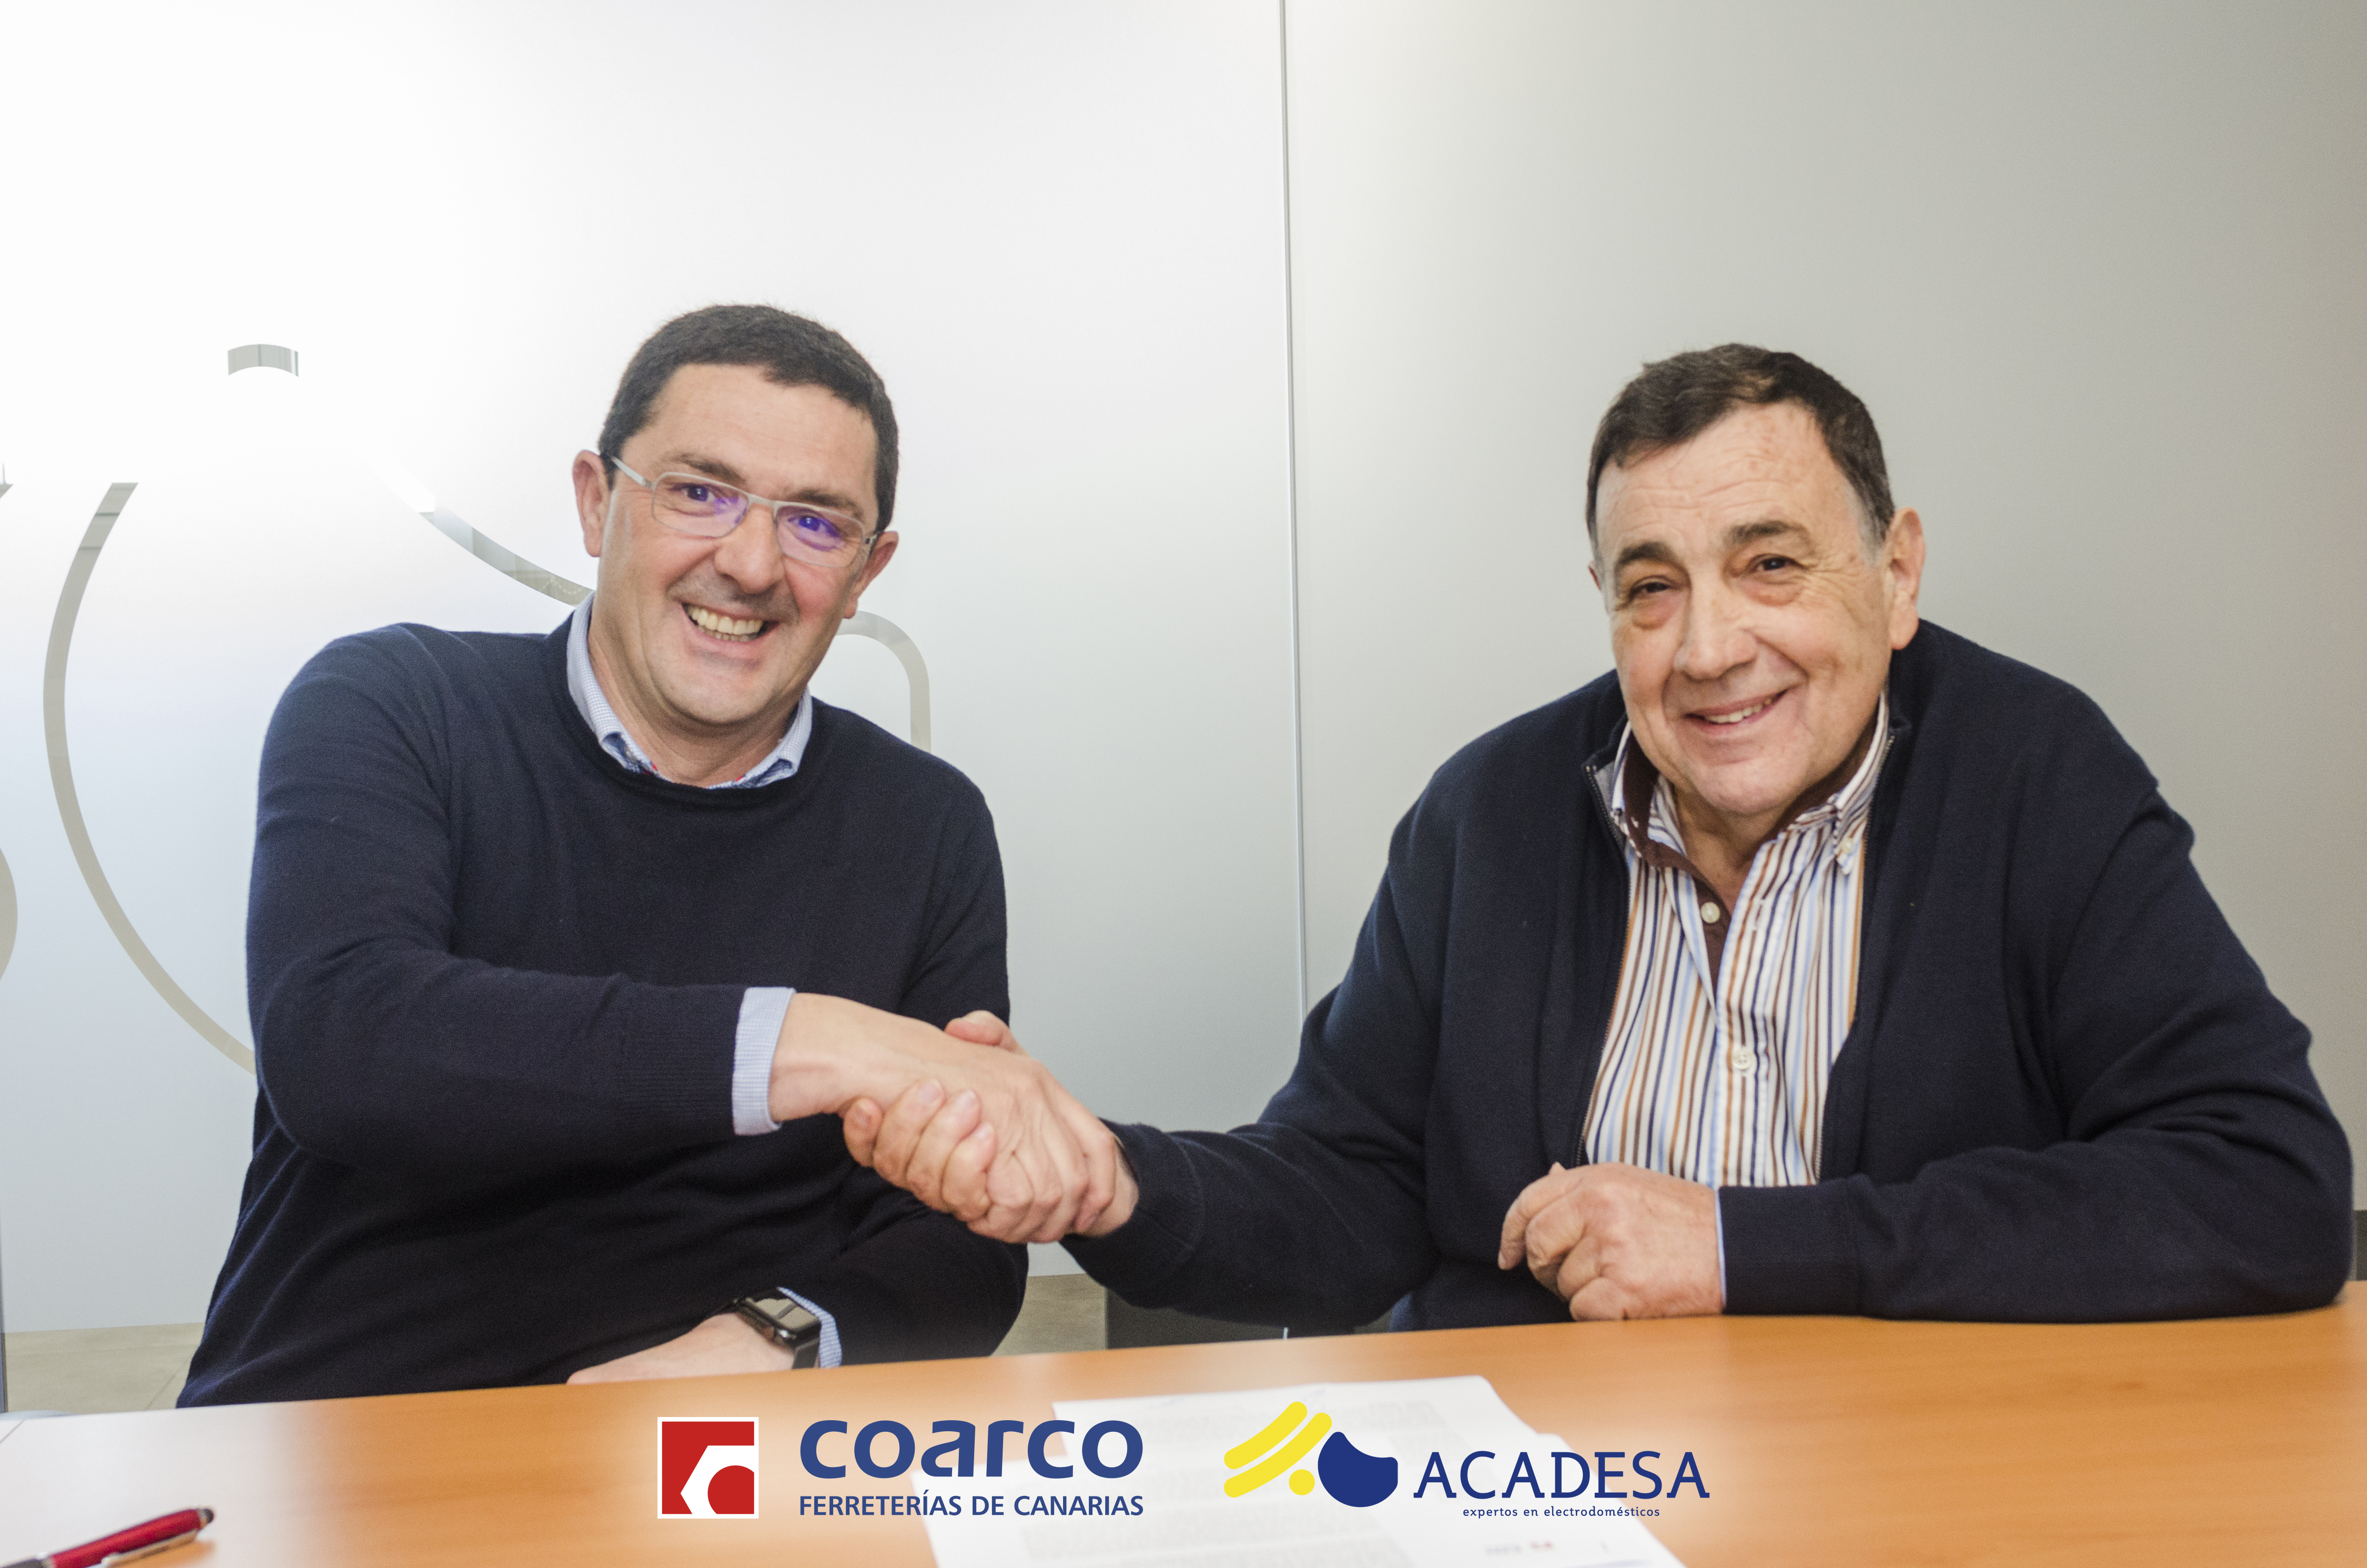 Coarco y Acadesa firman un acuerdo de colaboración